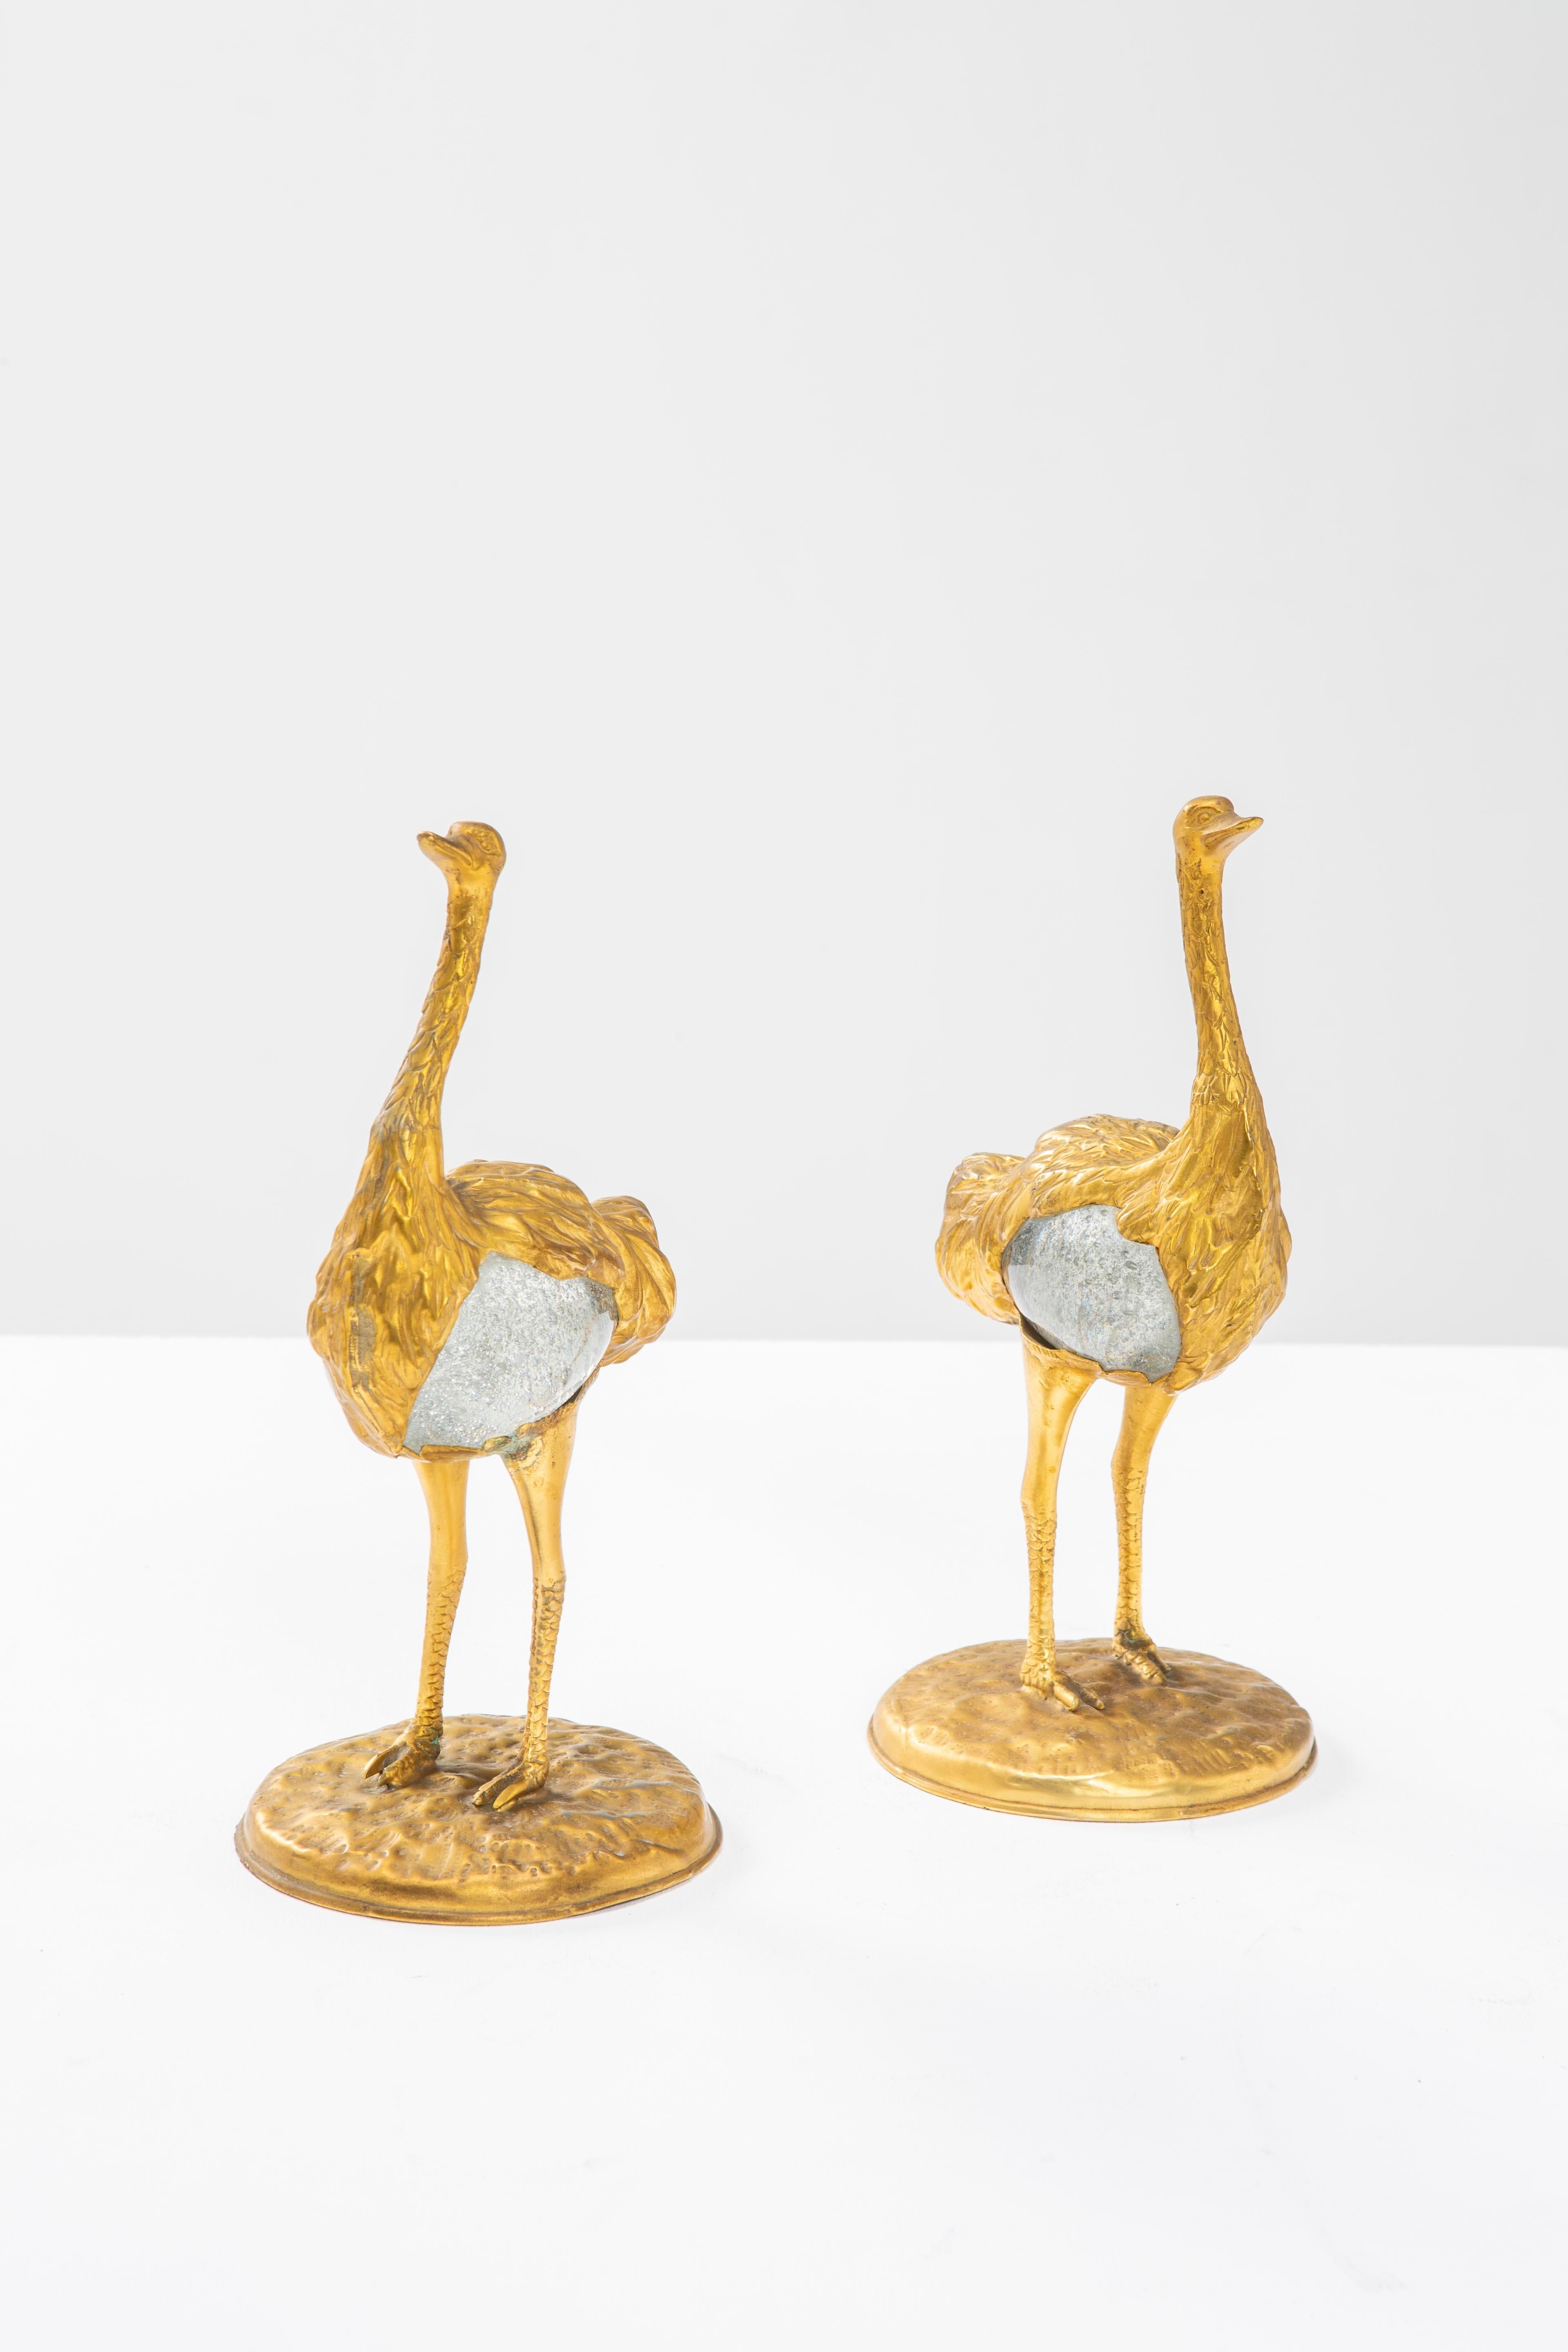 Ces deux autruches, conçues et réalisées par Gabriella Crespi, sont d'élégantes sculptures en bronze à la cire perdue dont les corps globulaires en verre de Murano ont été créés par Barovier&Toso. Ces sculptures font partie de la série Animali créée